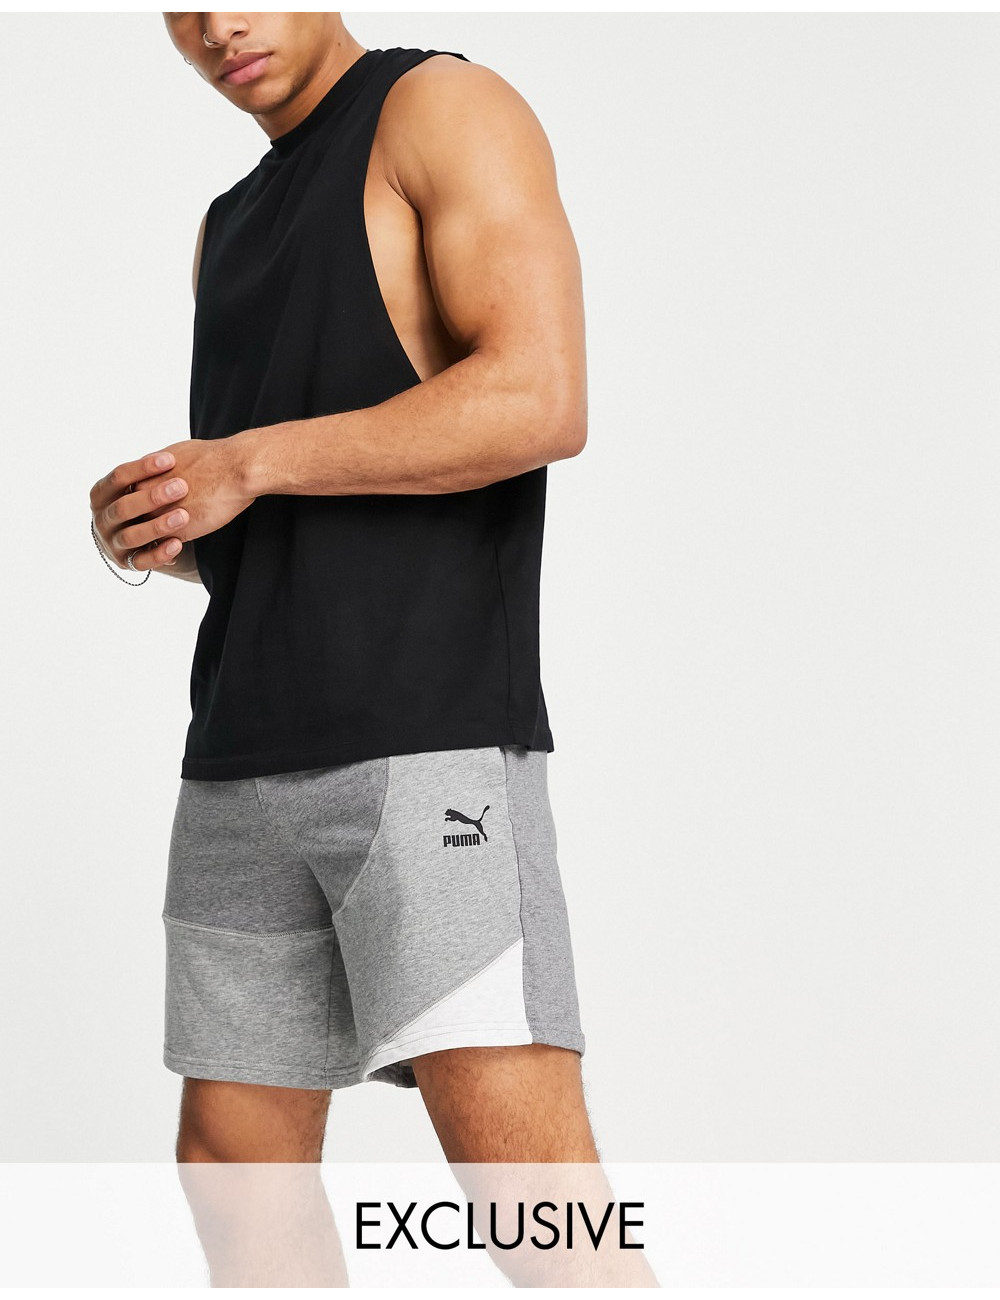 Puma convey shorts in grey...